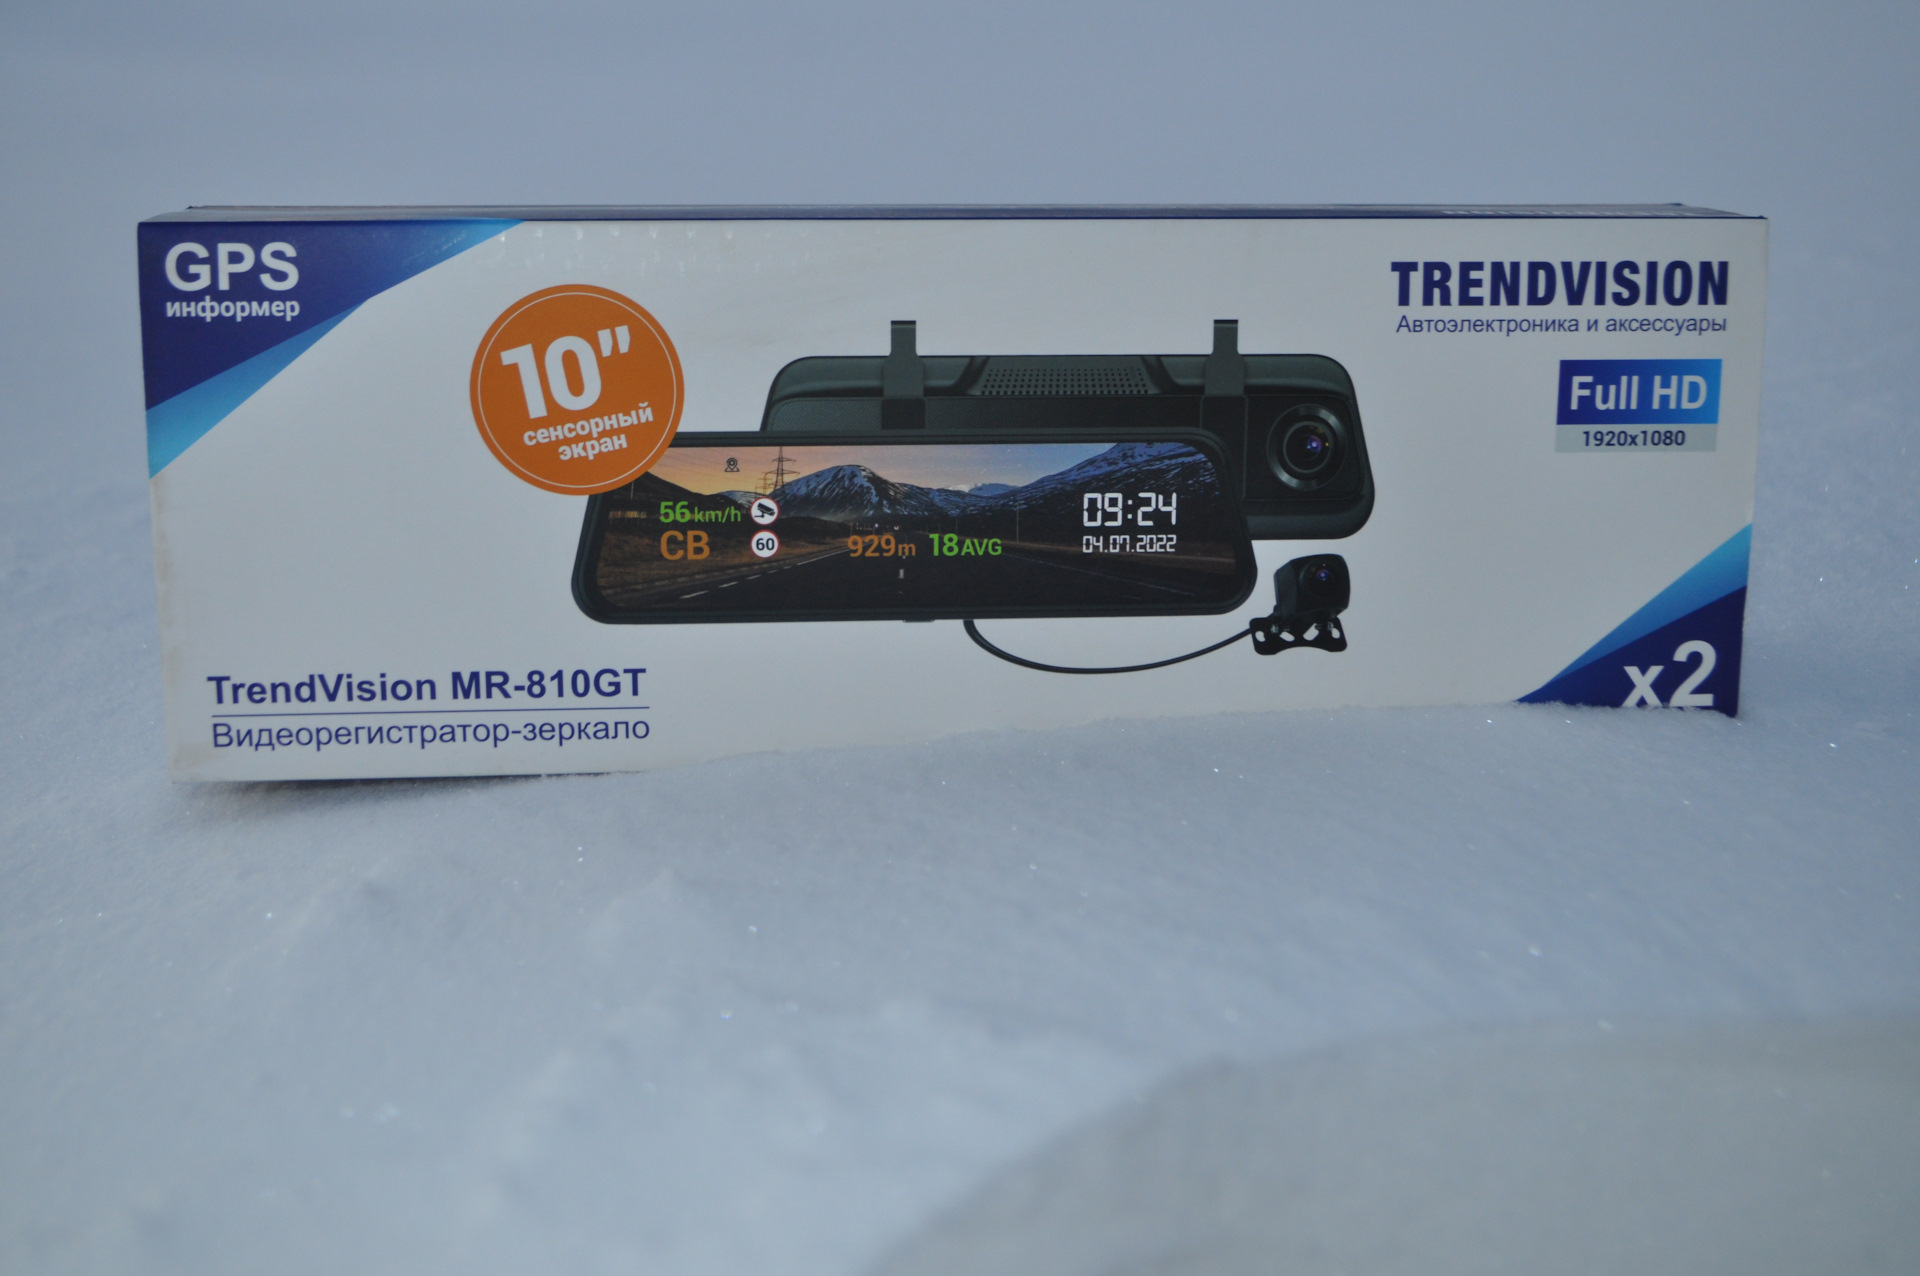 Trendvision mr 810. Полицейский с видеорегистратором. Показывает салон автомобиля TRENDVISION Mr-810 gt.